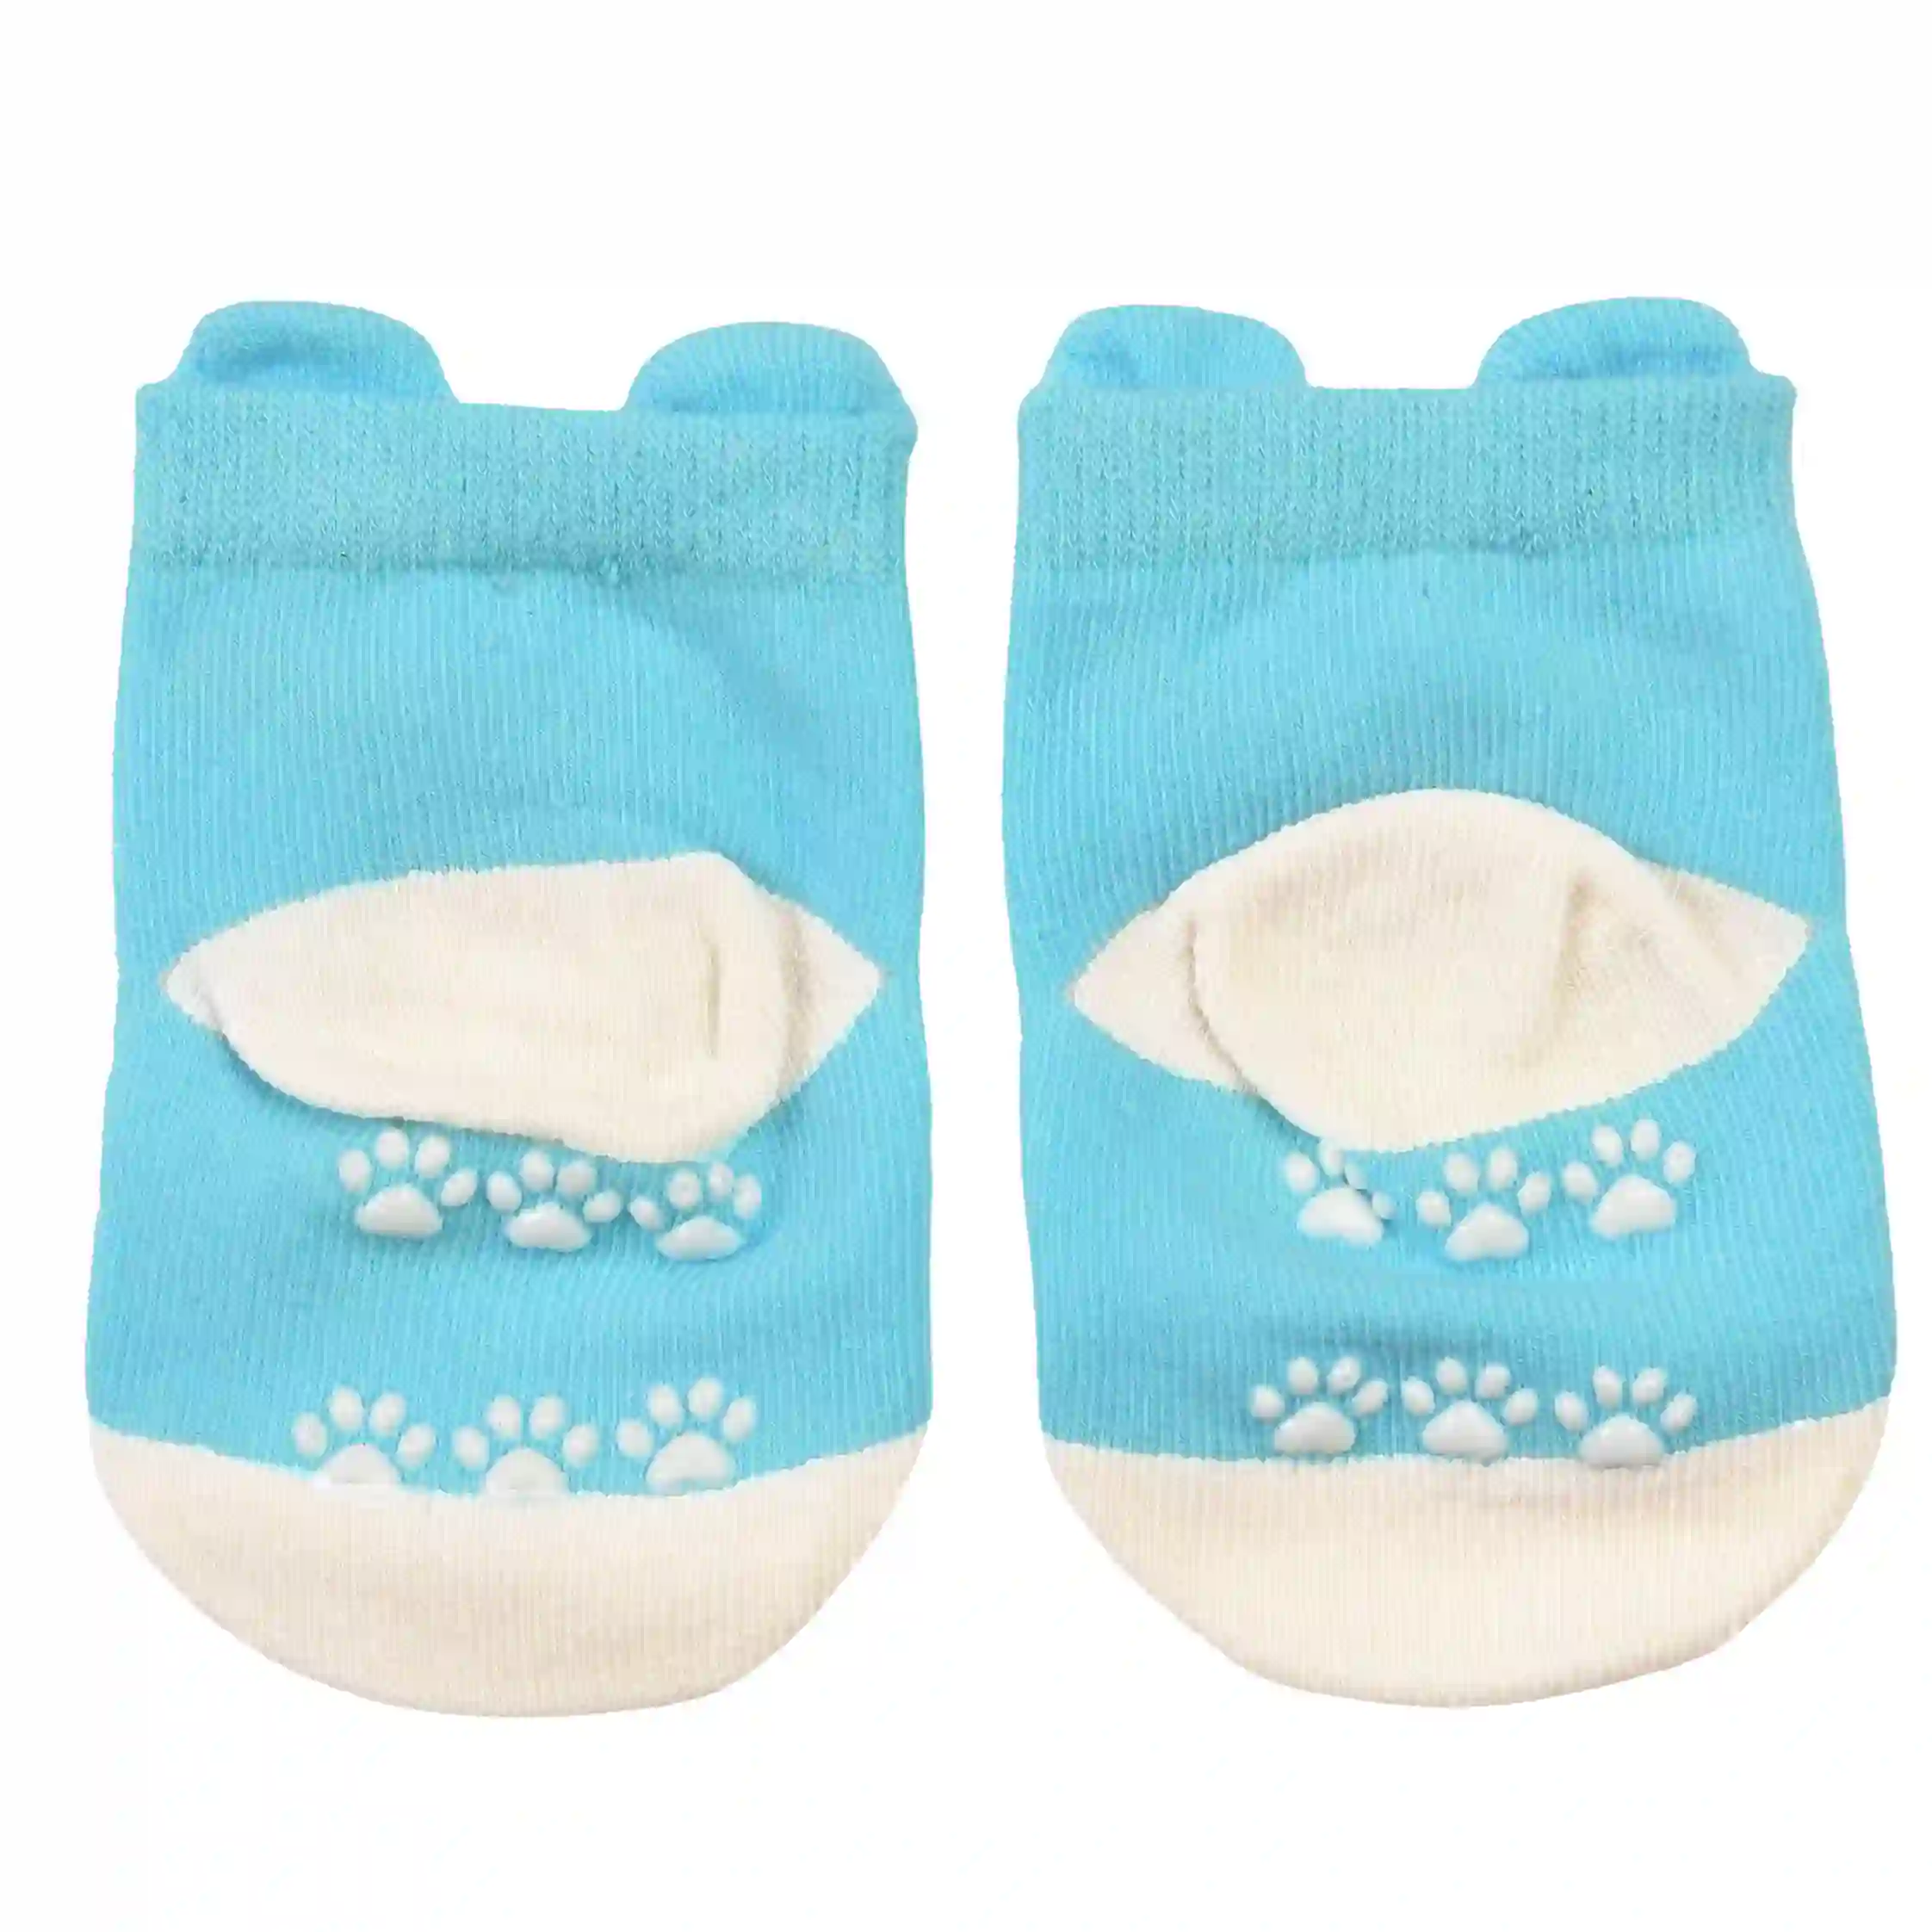 chaussettes bébé blue bear (une paire)